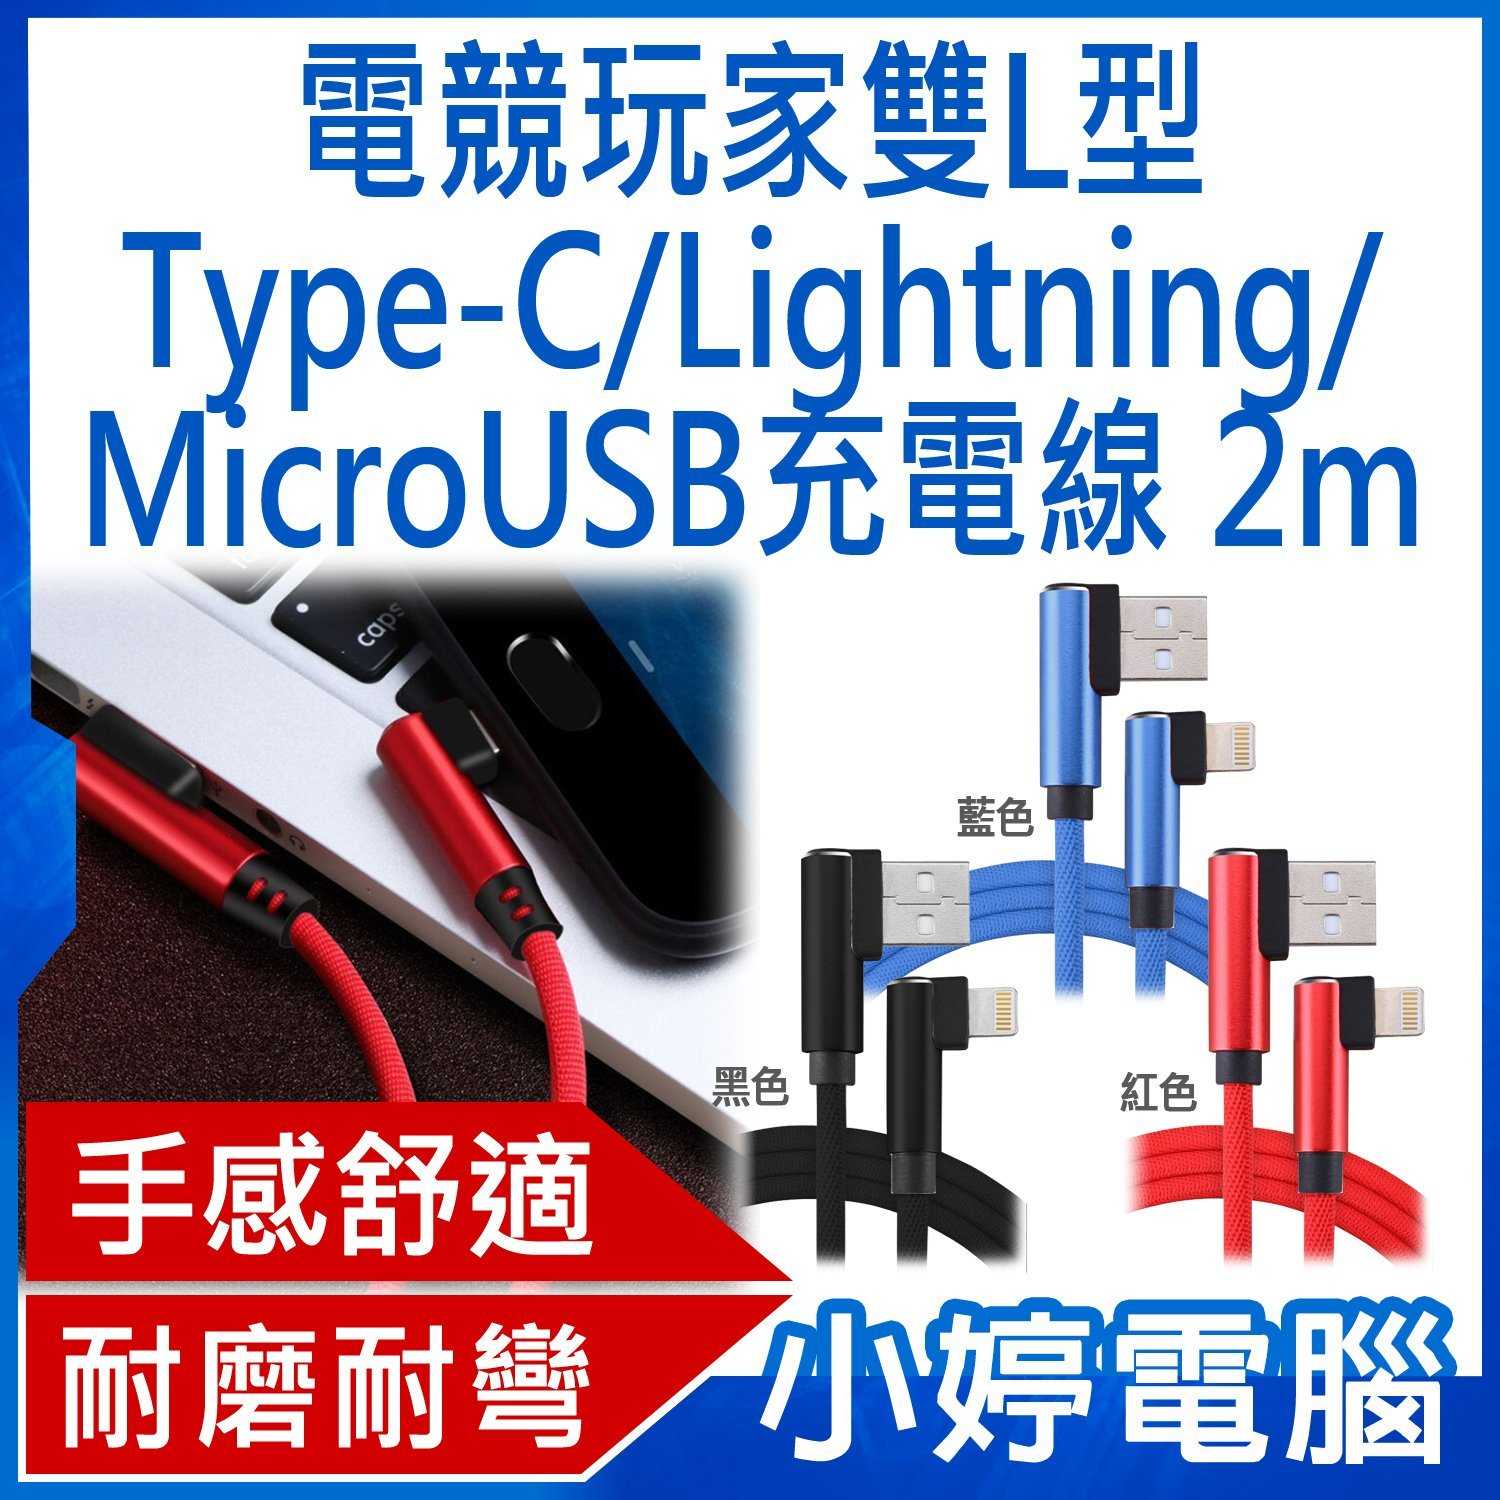 【小婷電腦】電競玩家雙L型Type-C/Lightning/MicroUSB編織充電線 2M